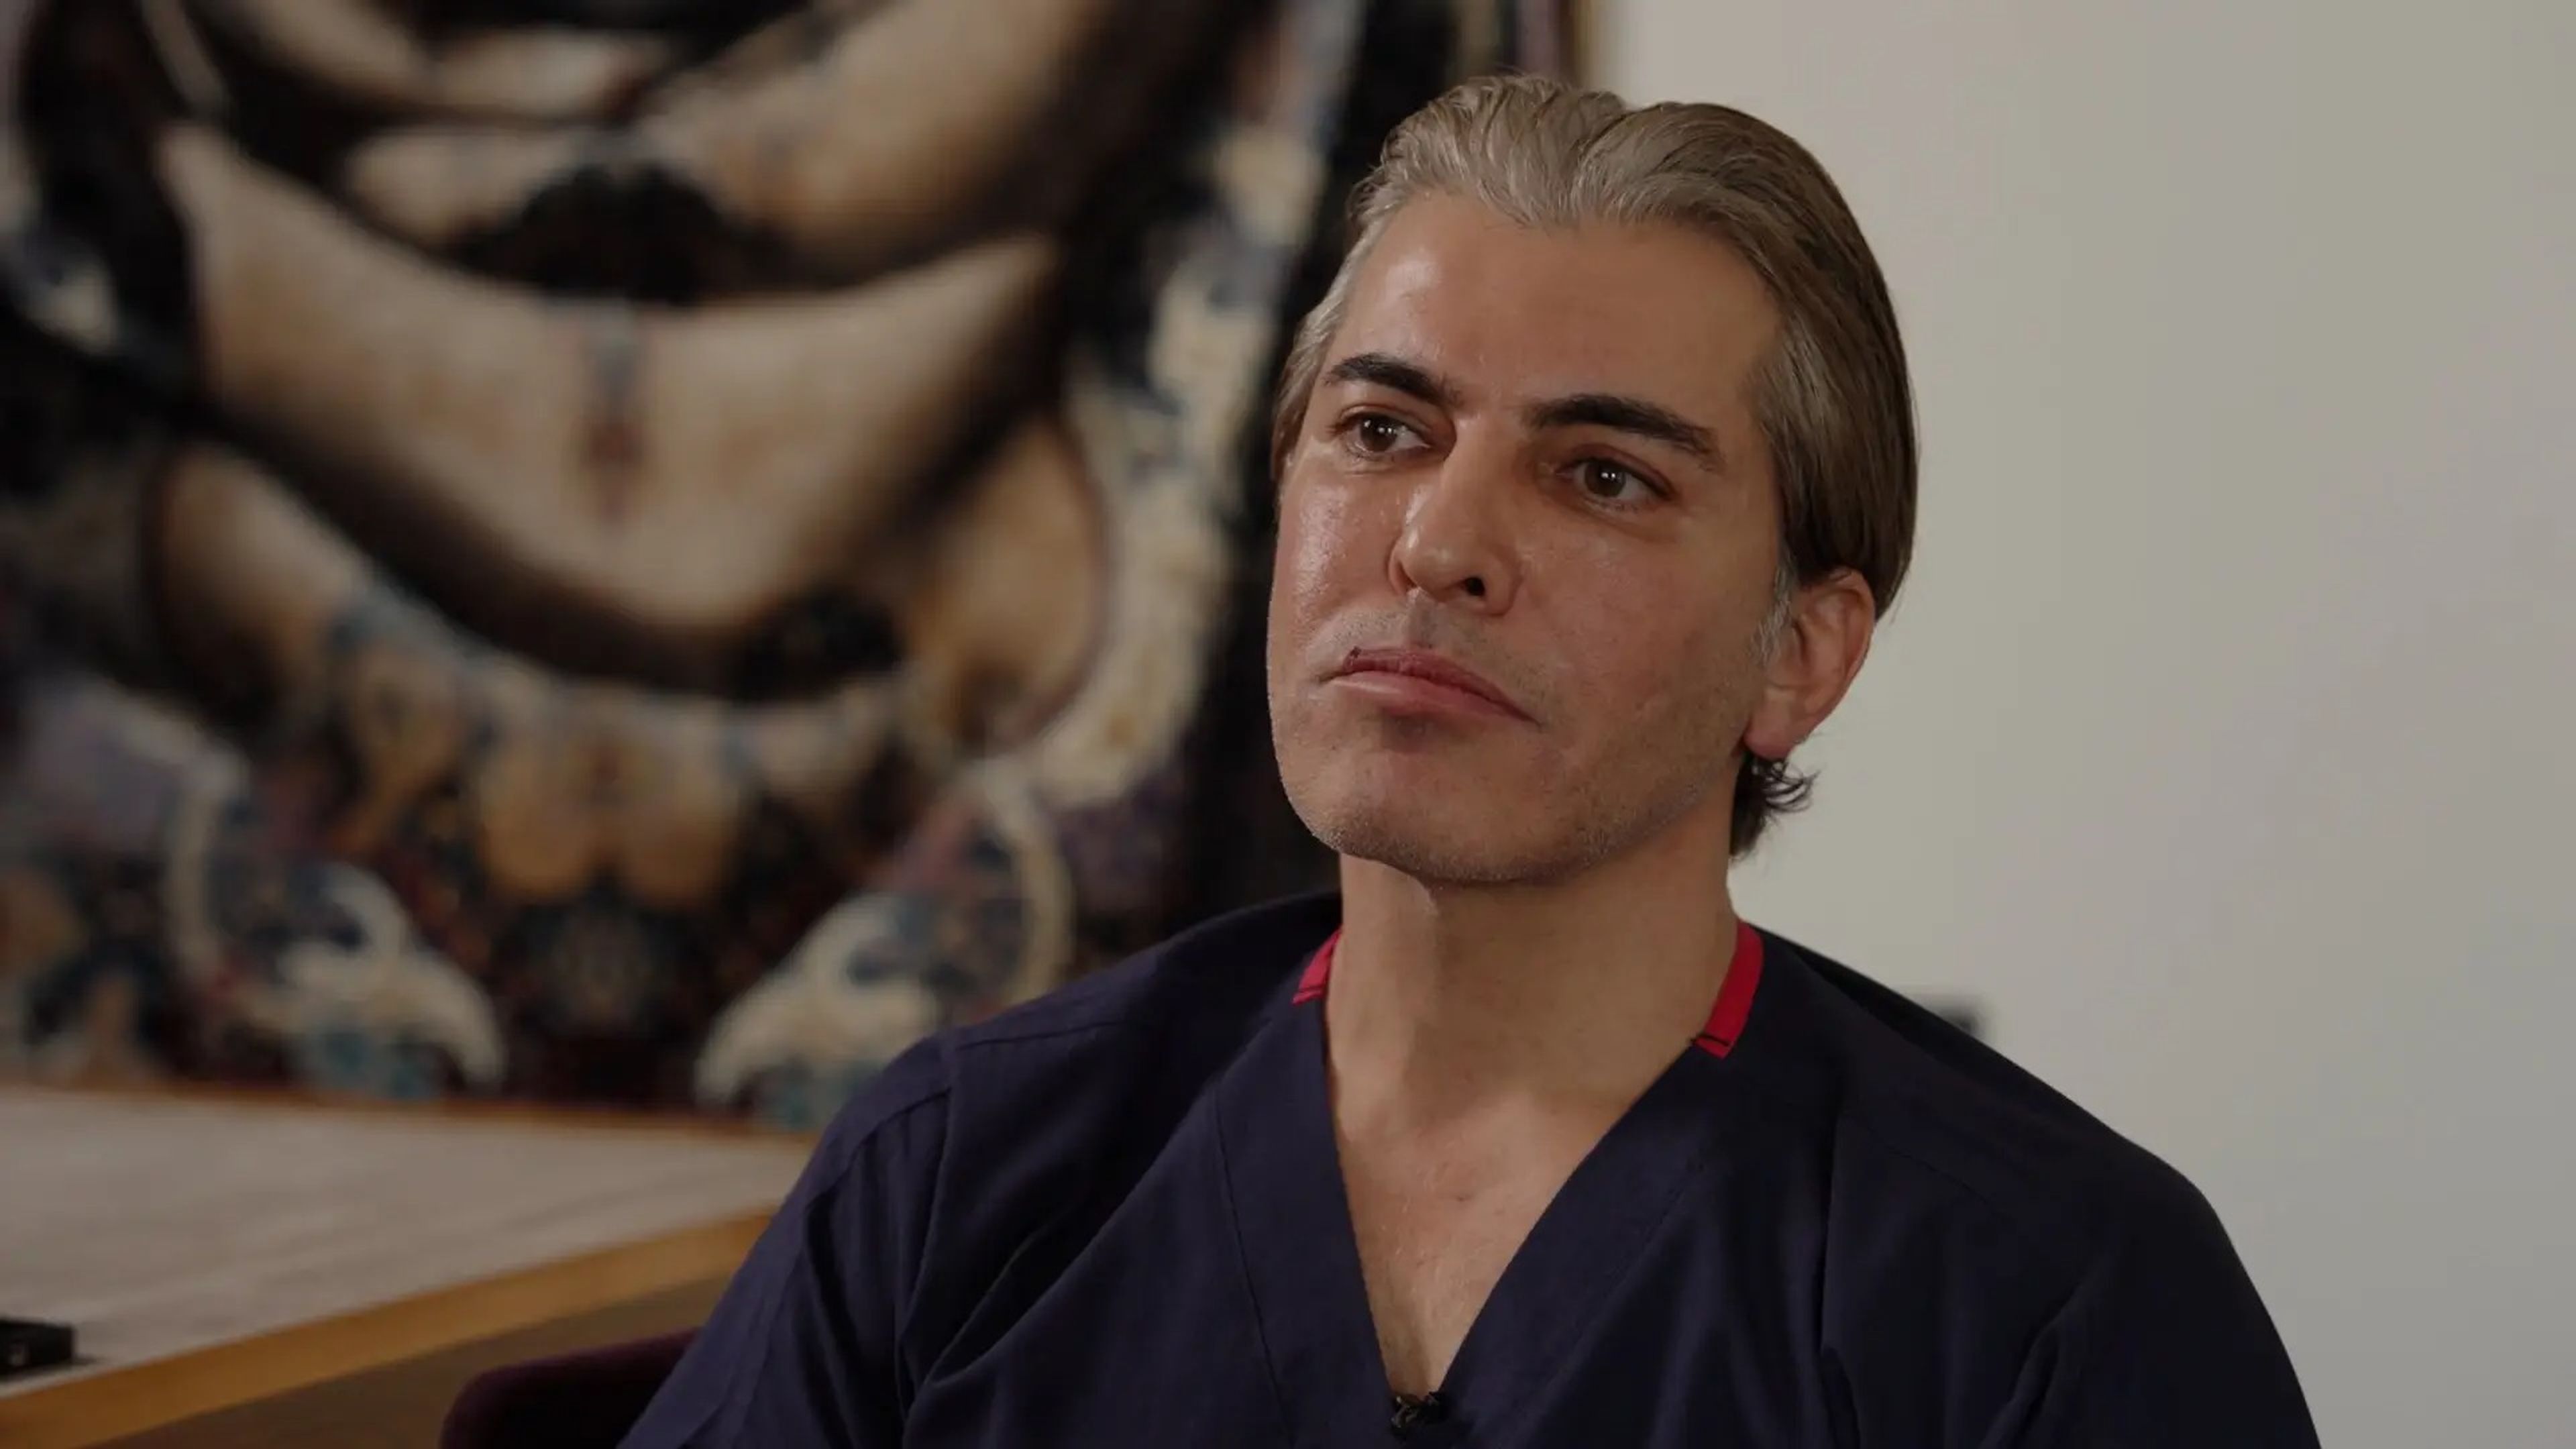 El Dr. Serkan Aygin ha estado realizando transplantes durante 25 años.